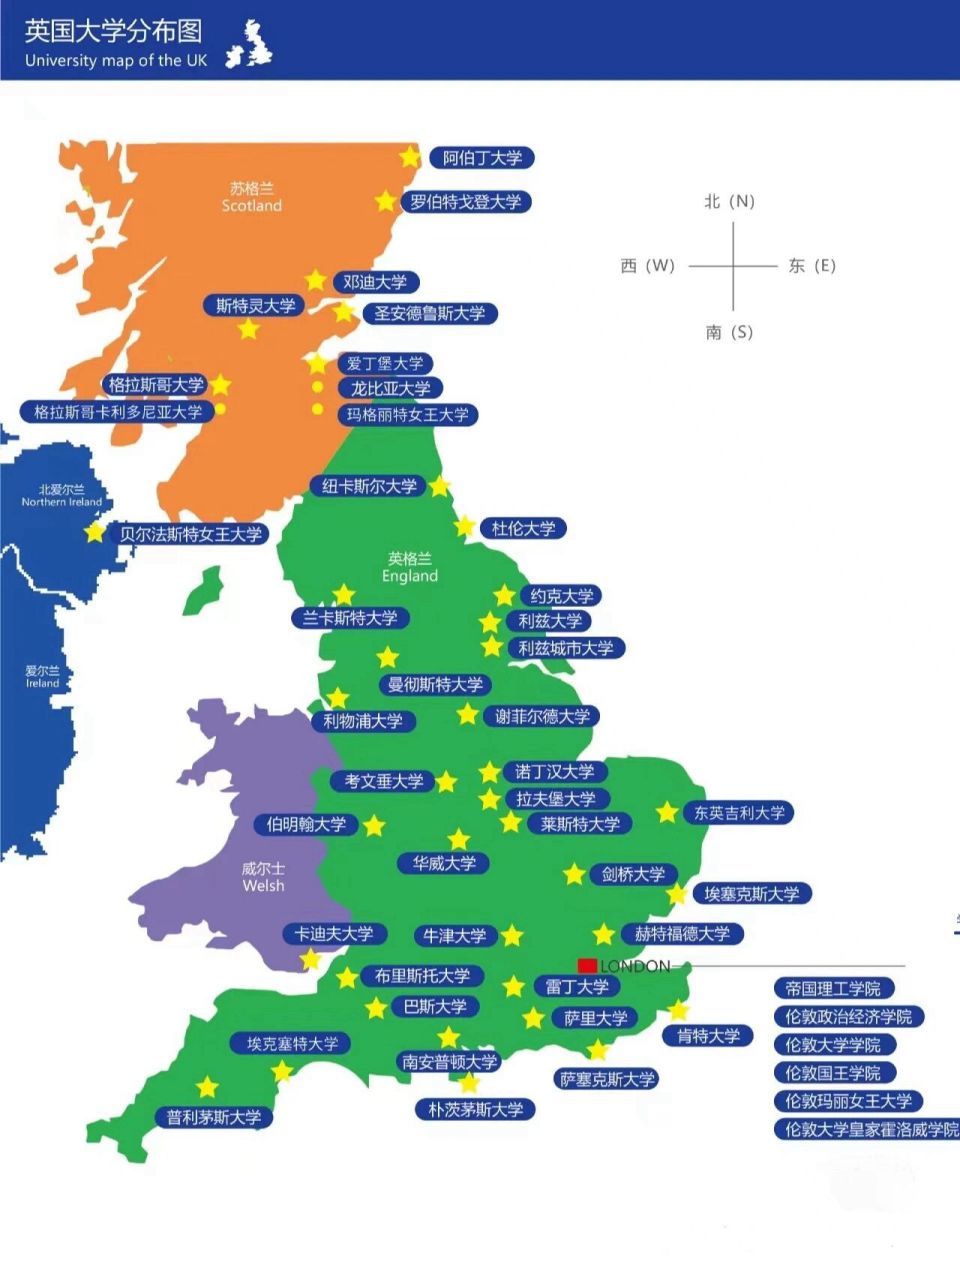 一张图让你了解英国大学地图9297 96对于计划申请英国留学的